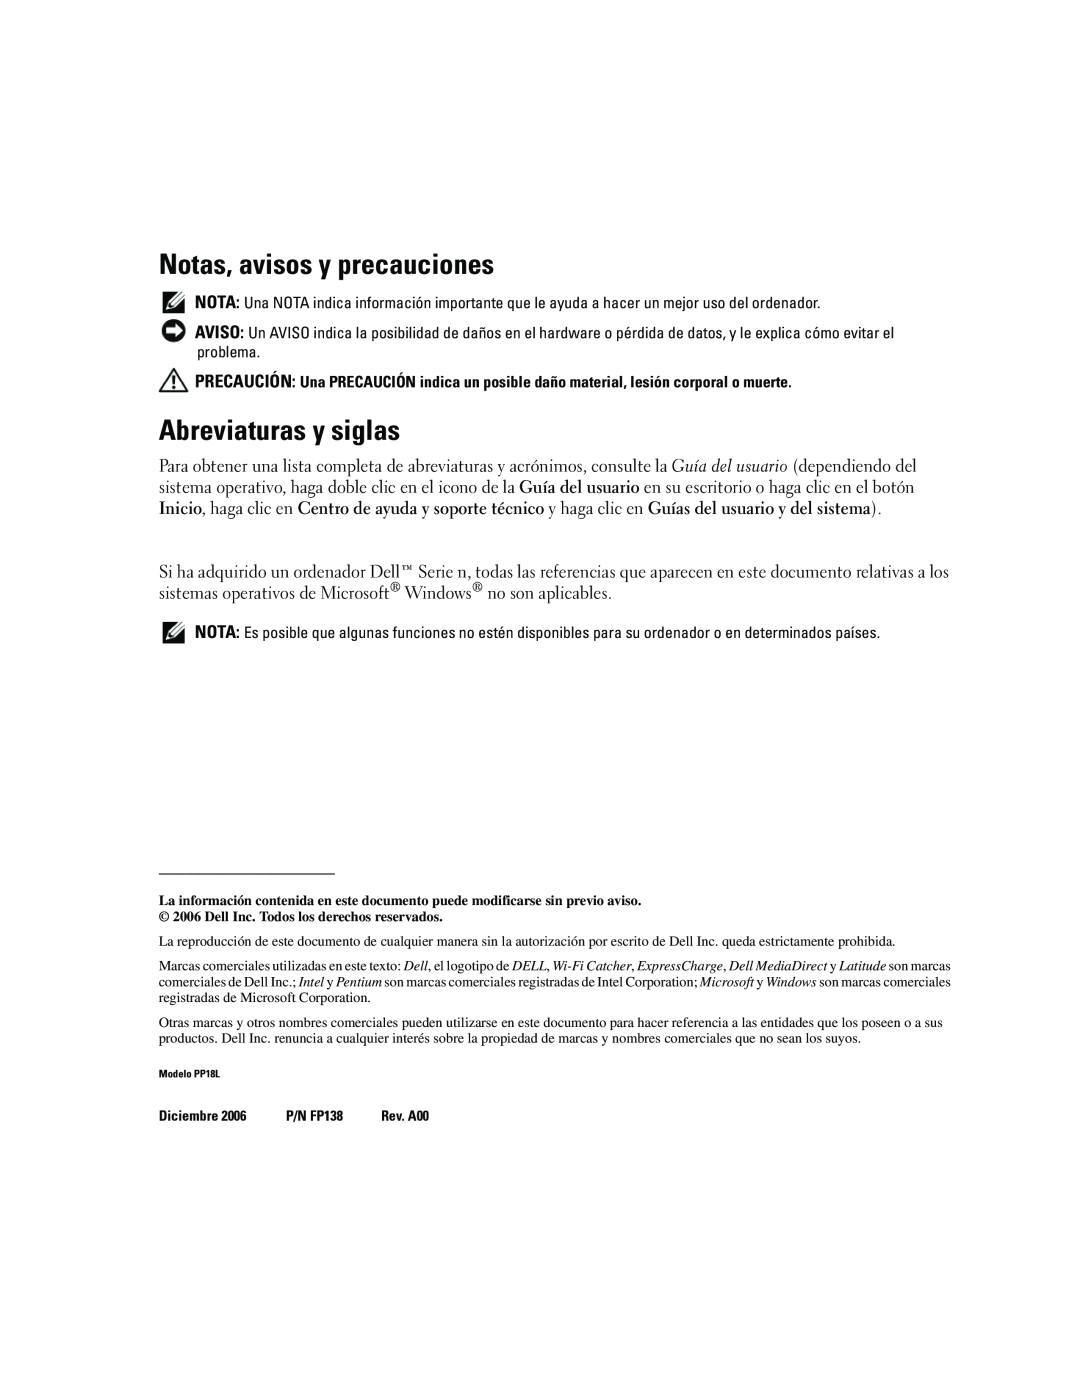 Dell ATG D620 manual Notas, avisos y precauciones, Abreviaturas y siglas 